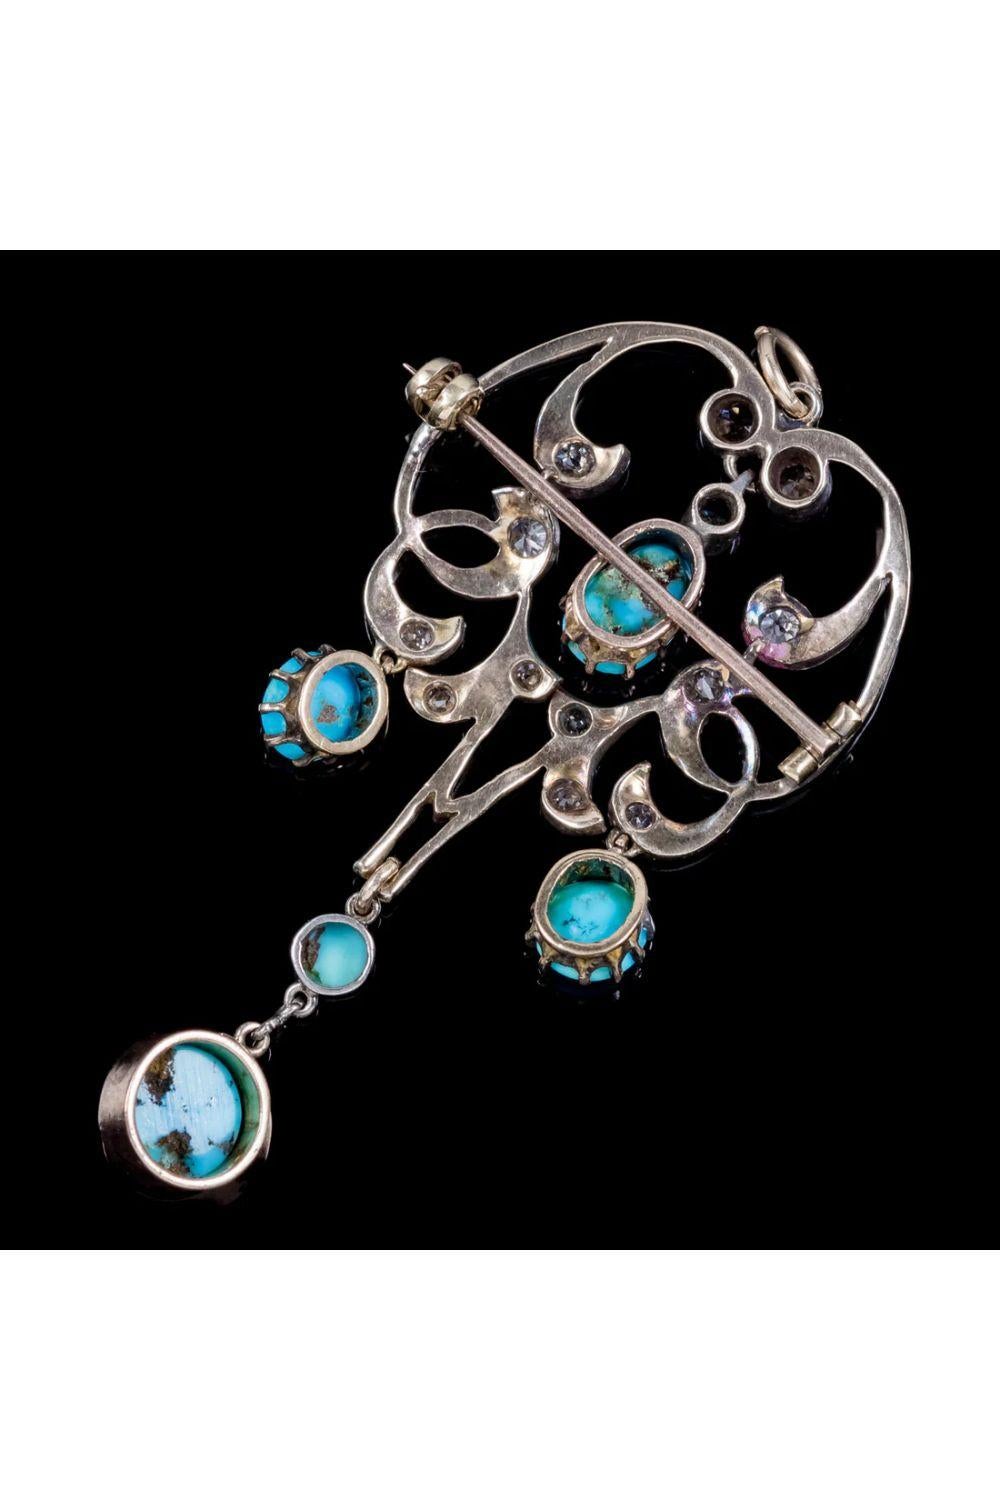 Magnifique pendentif Art Nouveau de l'époque édouardienne, orné de diamants brillants de taille ancienne et de cinq turquoises naturelles en forme de gouttes.

La plus grande turquoise est d'environ 2ct et est suspendue à un pendule à la base. Les